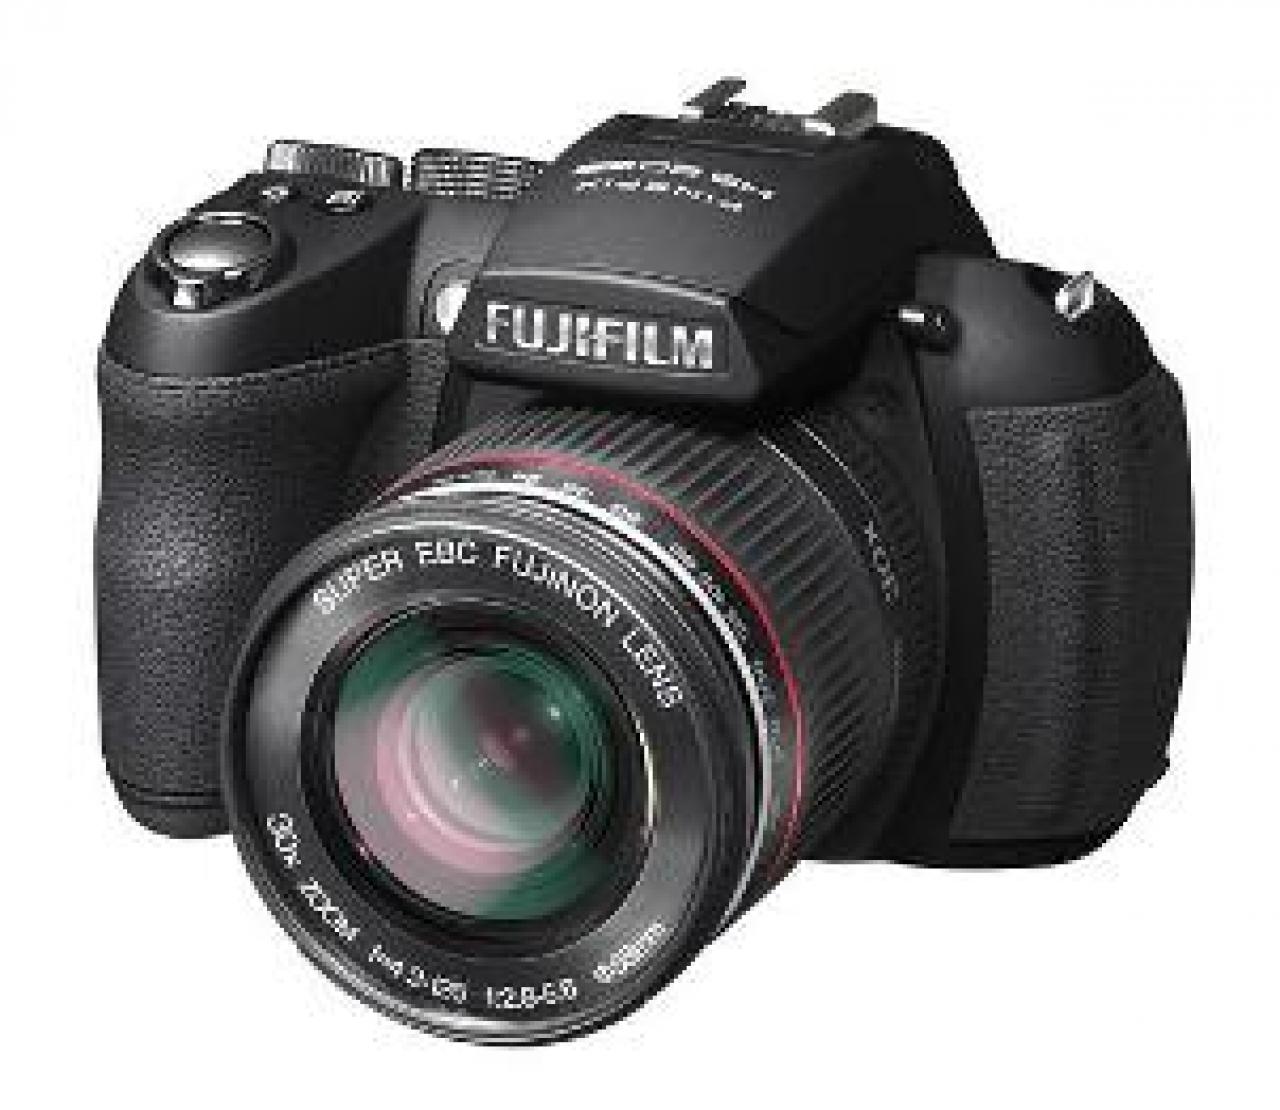 دوربین فوجی اچ اس 20 / Fujifilm HS20